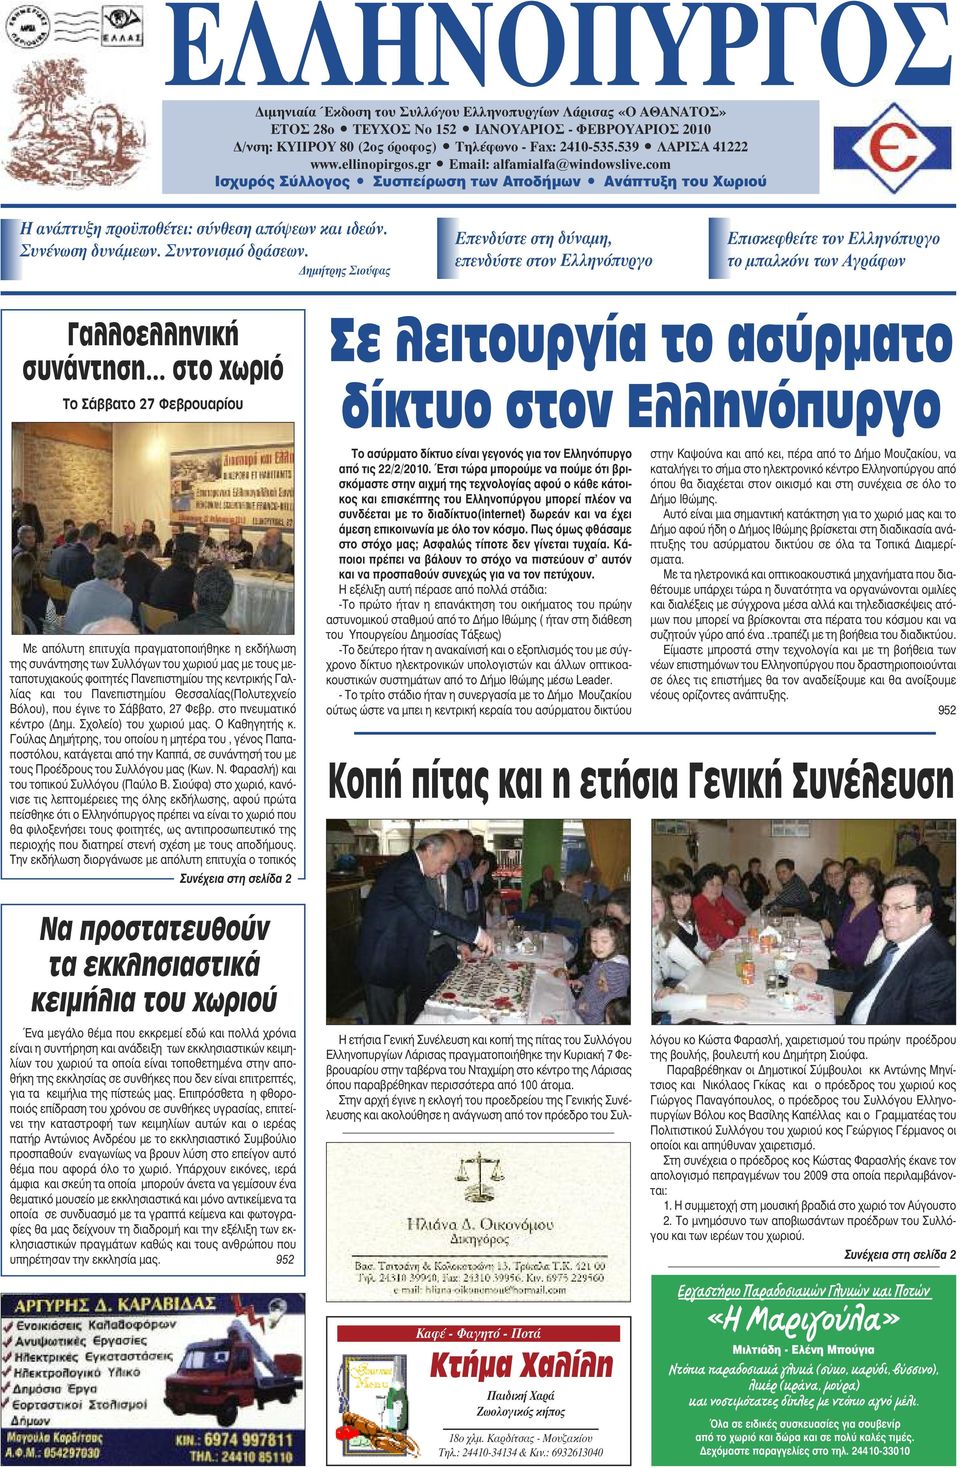 Συνένωση δυνάμεων. Συντονισμό δράσεων. Δημήτρης Σιούφας Επενδύστε στη δύναμη, επενδύστε στον Ελληνόπυργο Επισκεφθείτε τον Ελληνόπυργο το μπαλκόνι των Αγράφων Γαλλοελληνική συνάντηση.